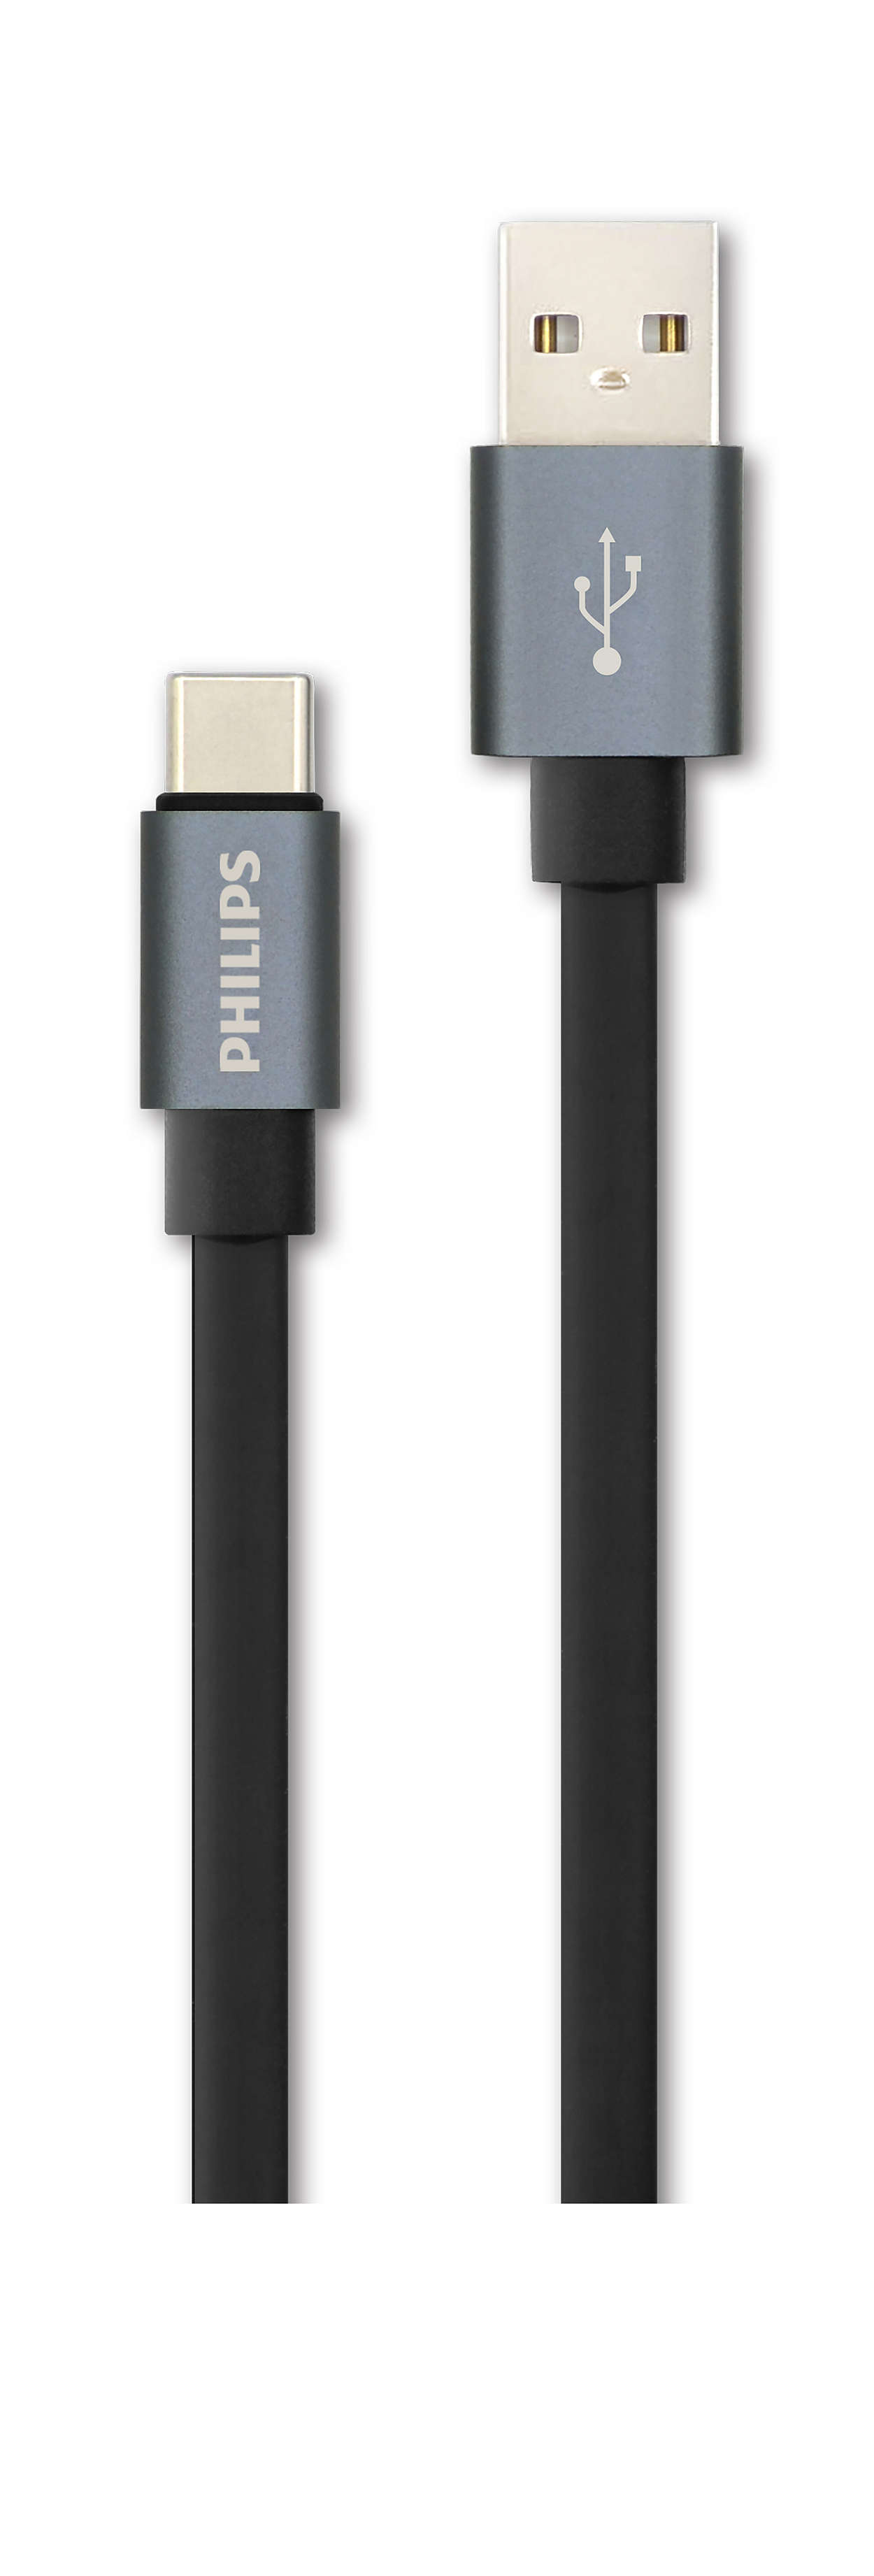 Cáp nối USB A đến C dài 1,2 m